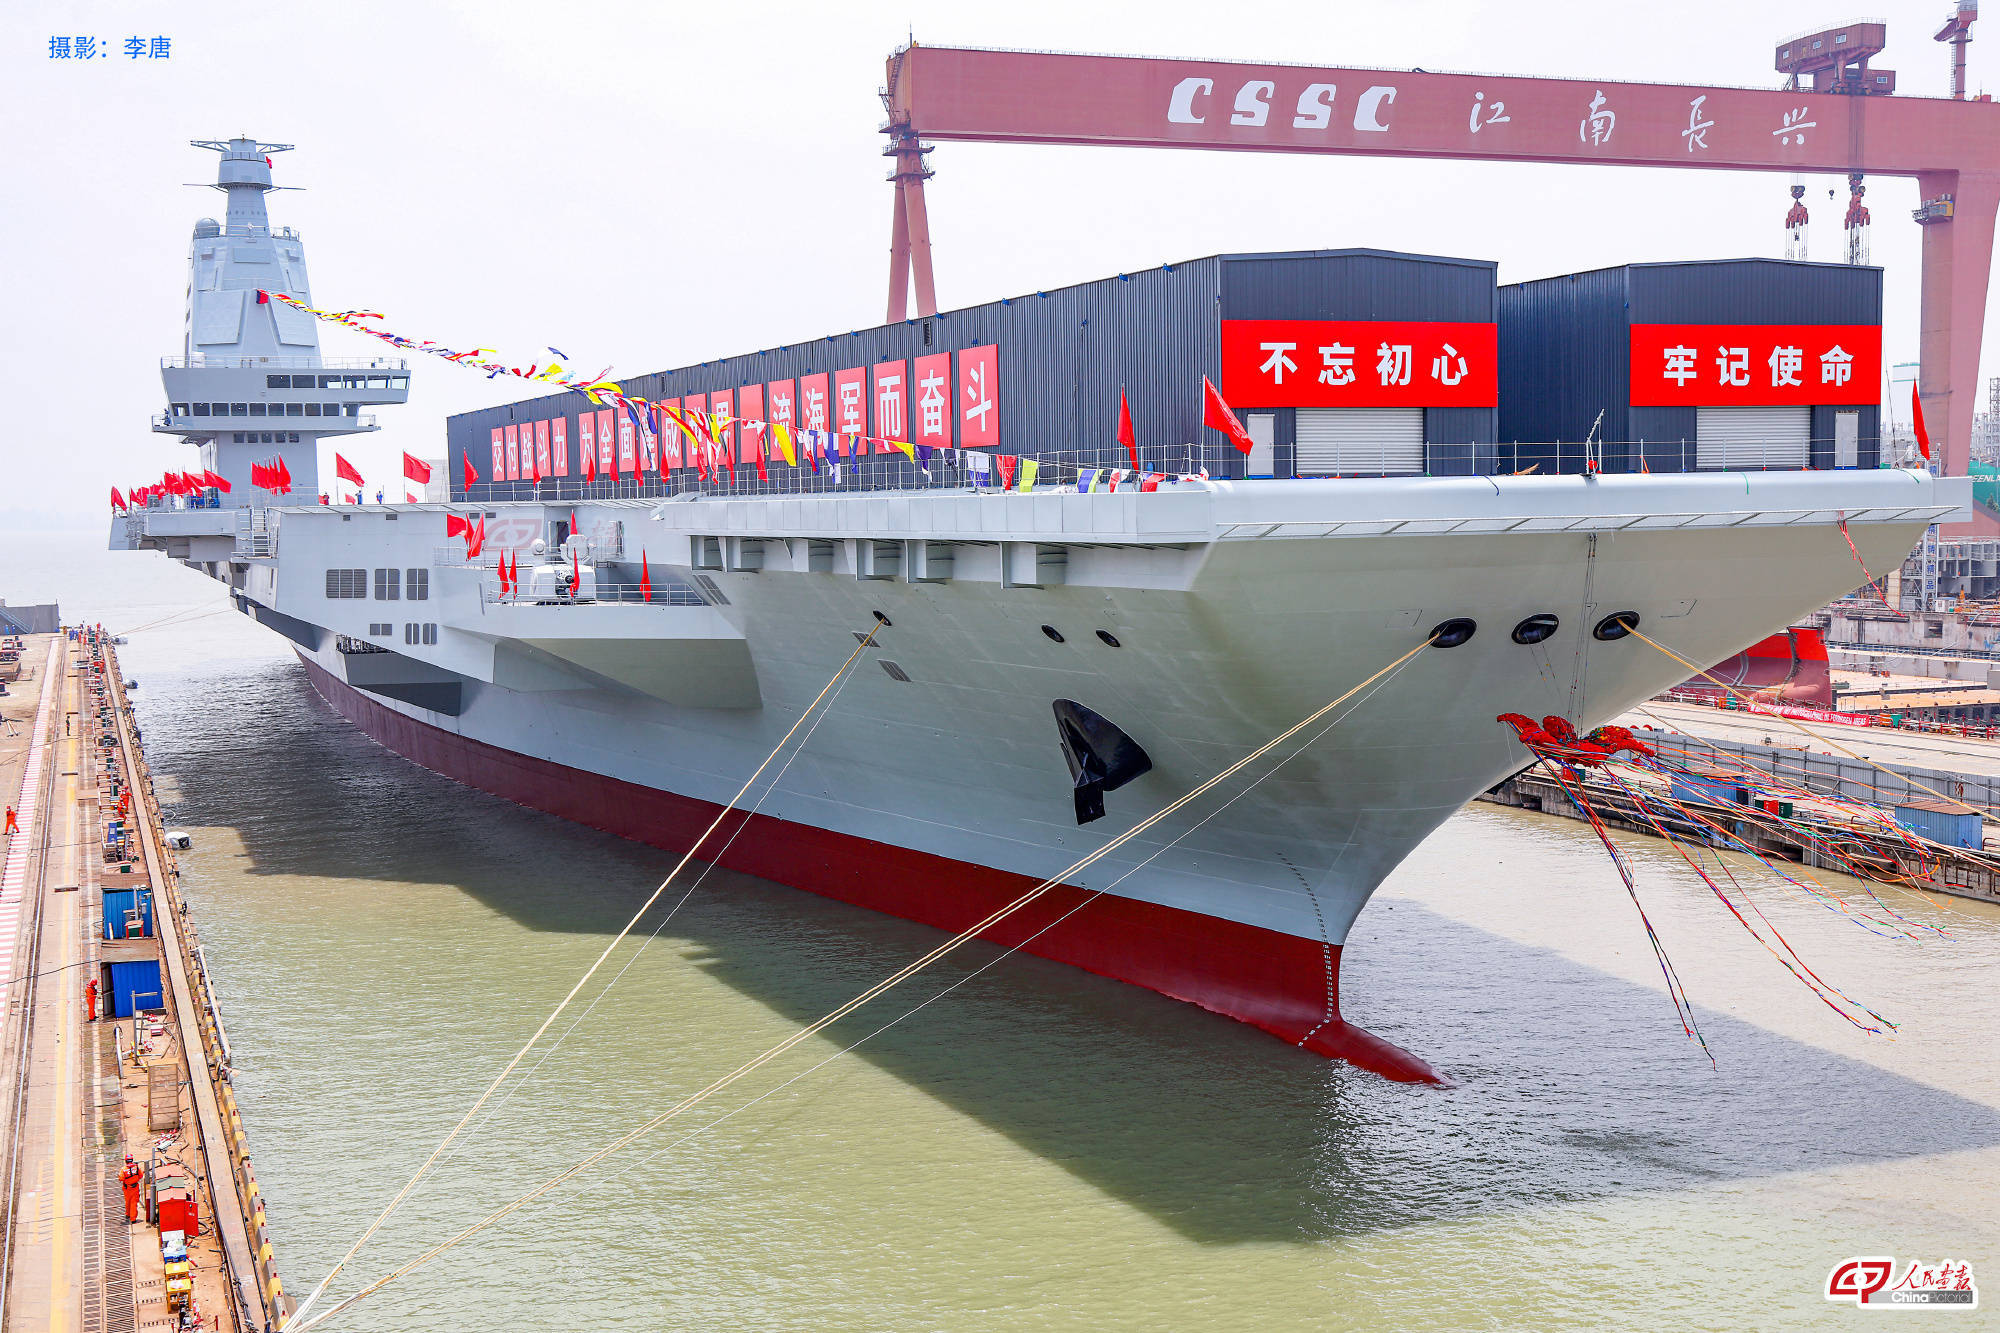 经中央军委批准,我国第三艘航空母舰命名为中国人民解放军海军福建舰